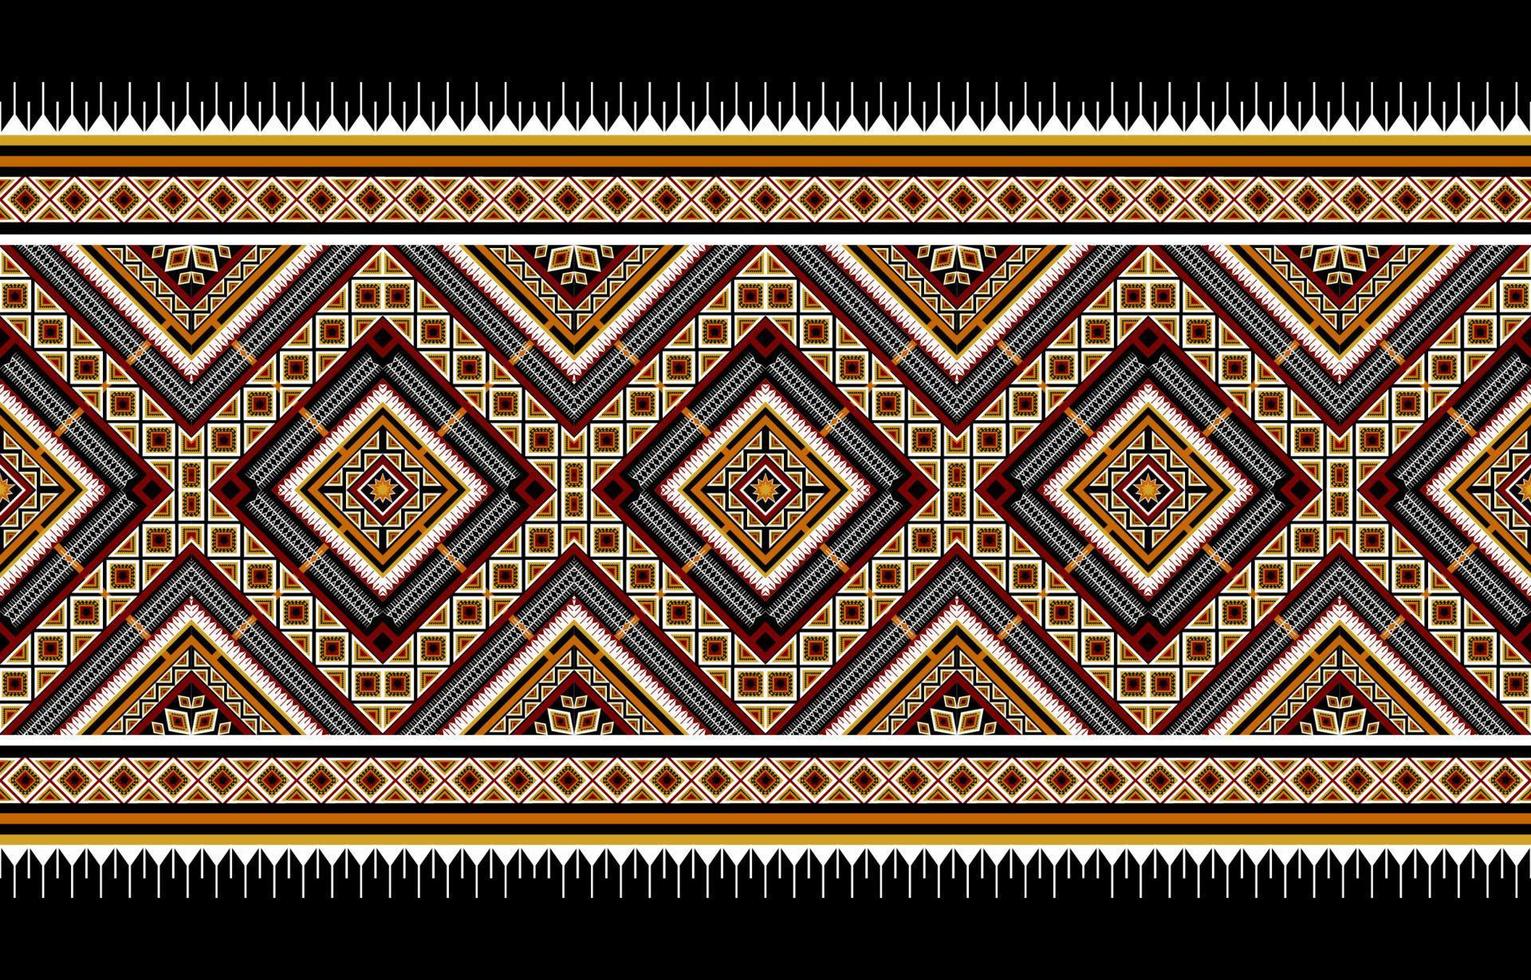 abstrato geométrico padrão étnico tradicional. estilo americano, mexicano. design para plano de fundo, ilustração, papel de parede, tecido, batik, tapete, vestuário, bordado vetor